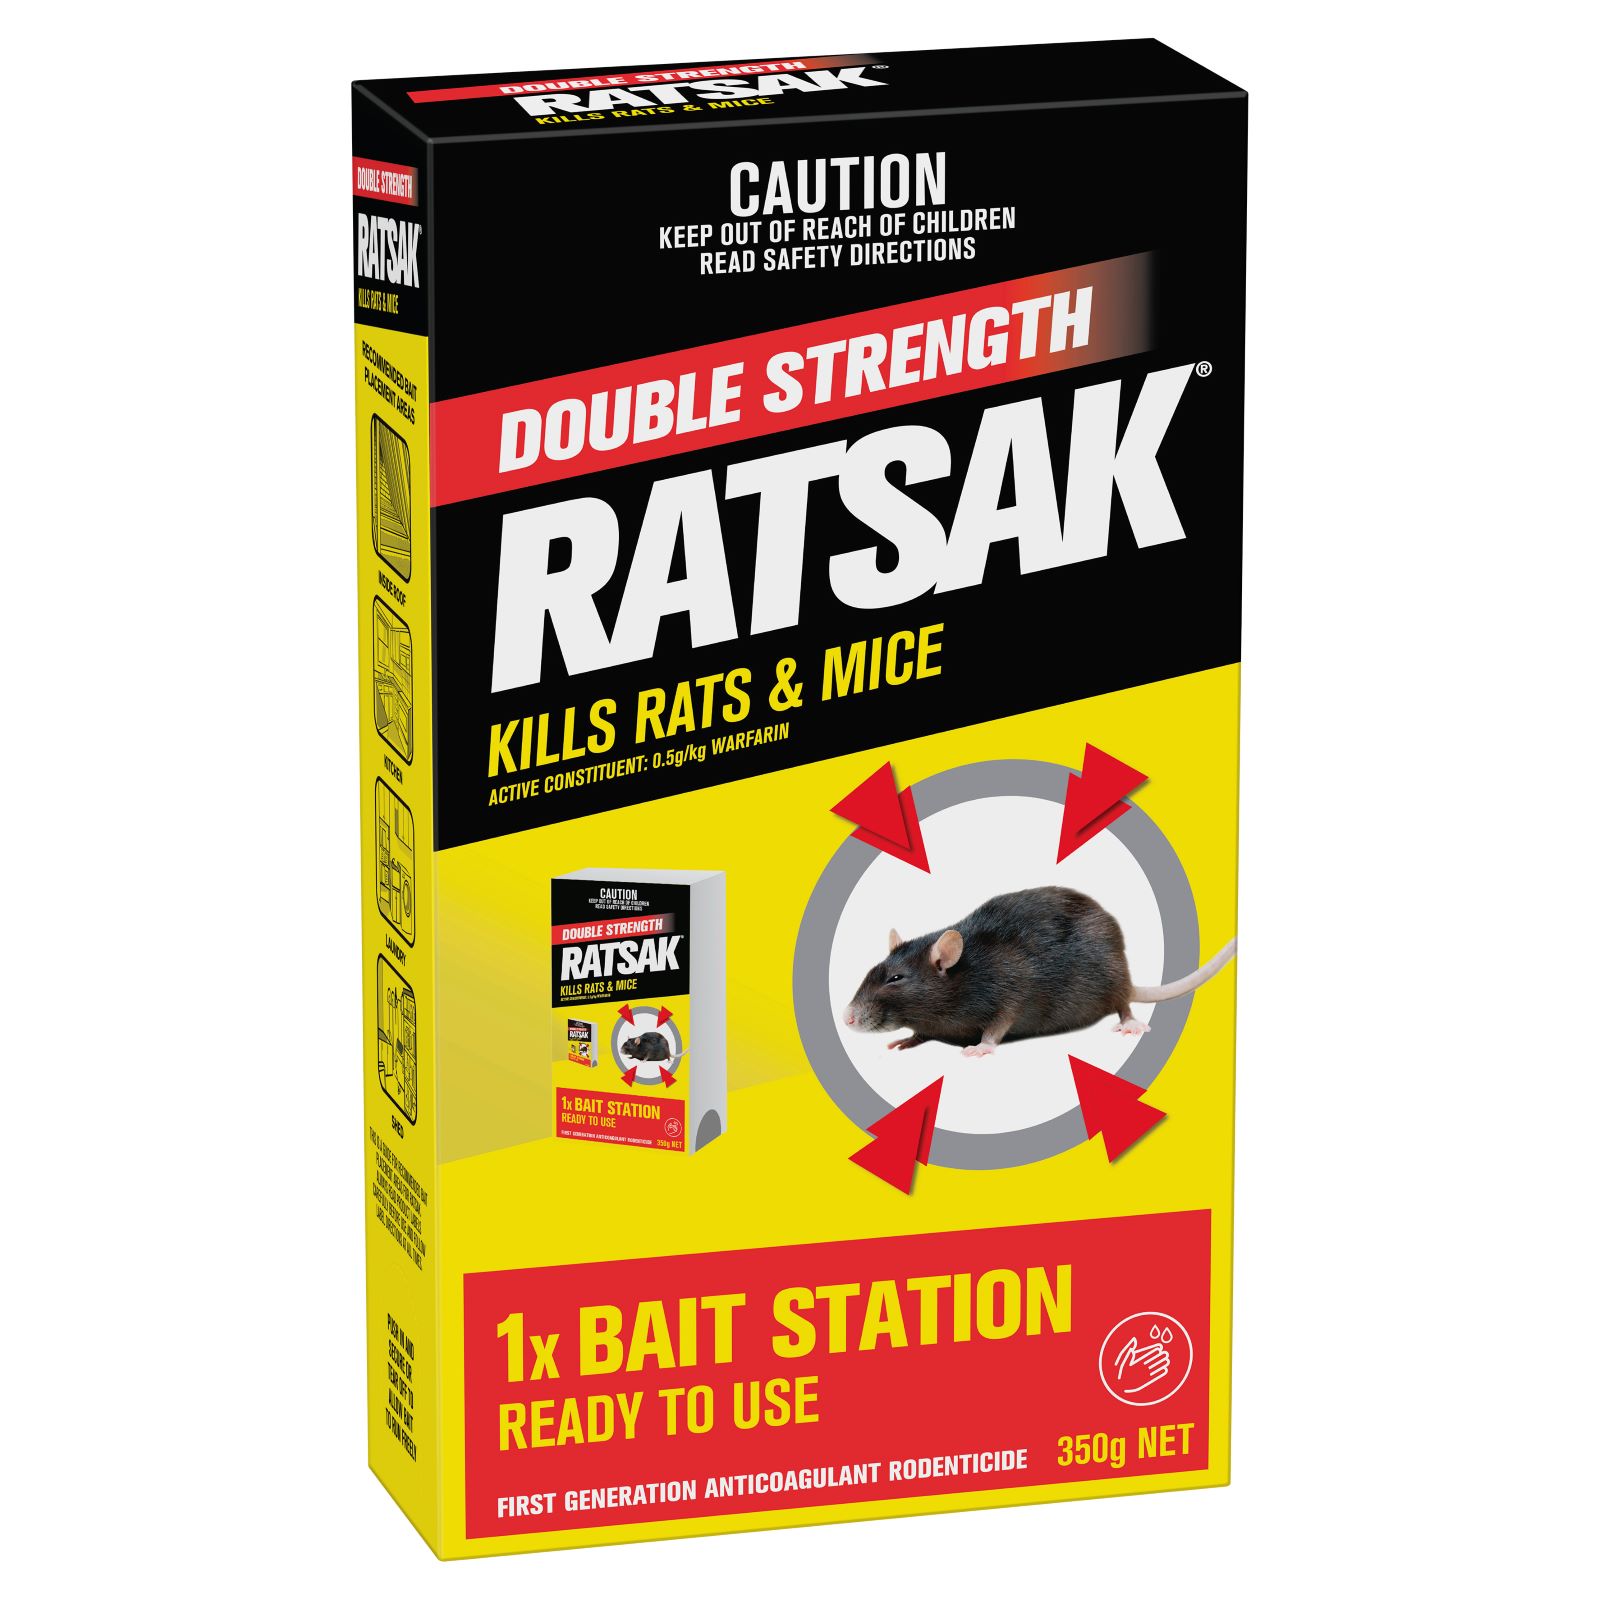 https://www.yates.com.au/media/ye4jqsmx/56511_ratsak-double-strength-bait-station_fop_wo6jxz.jpg